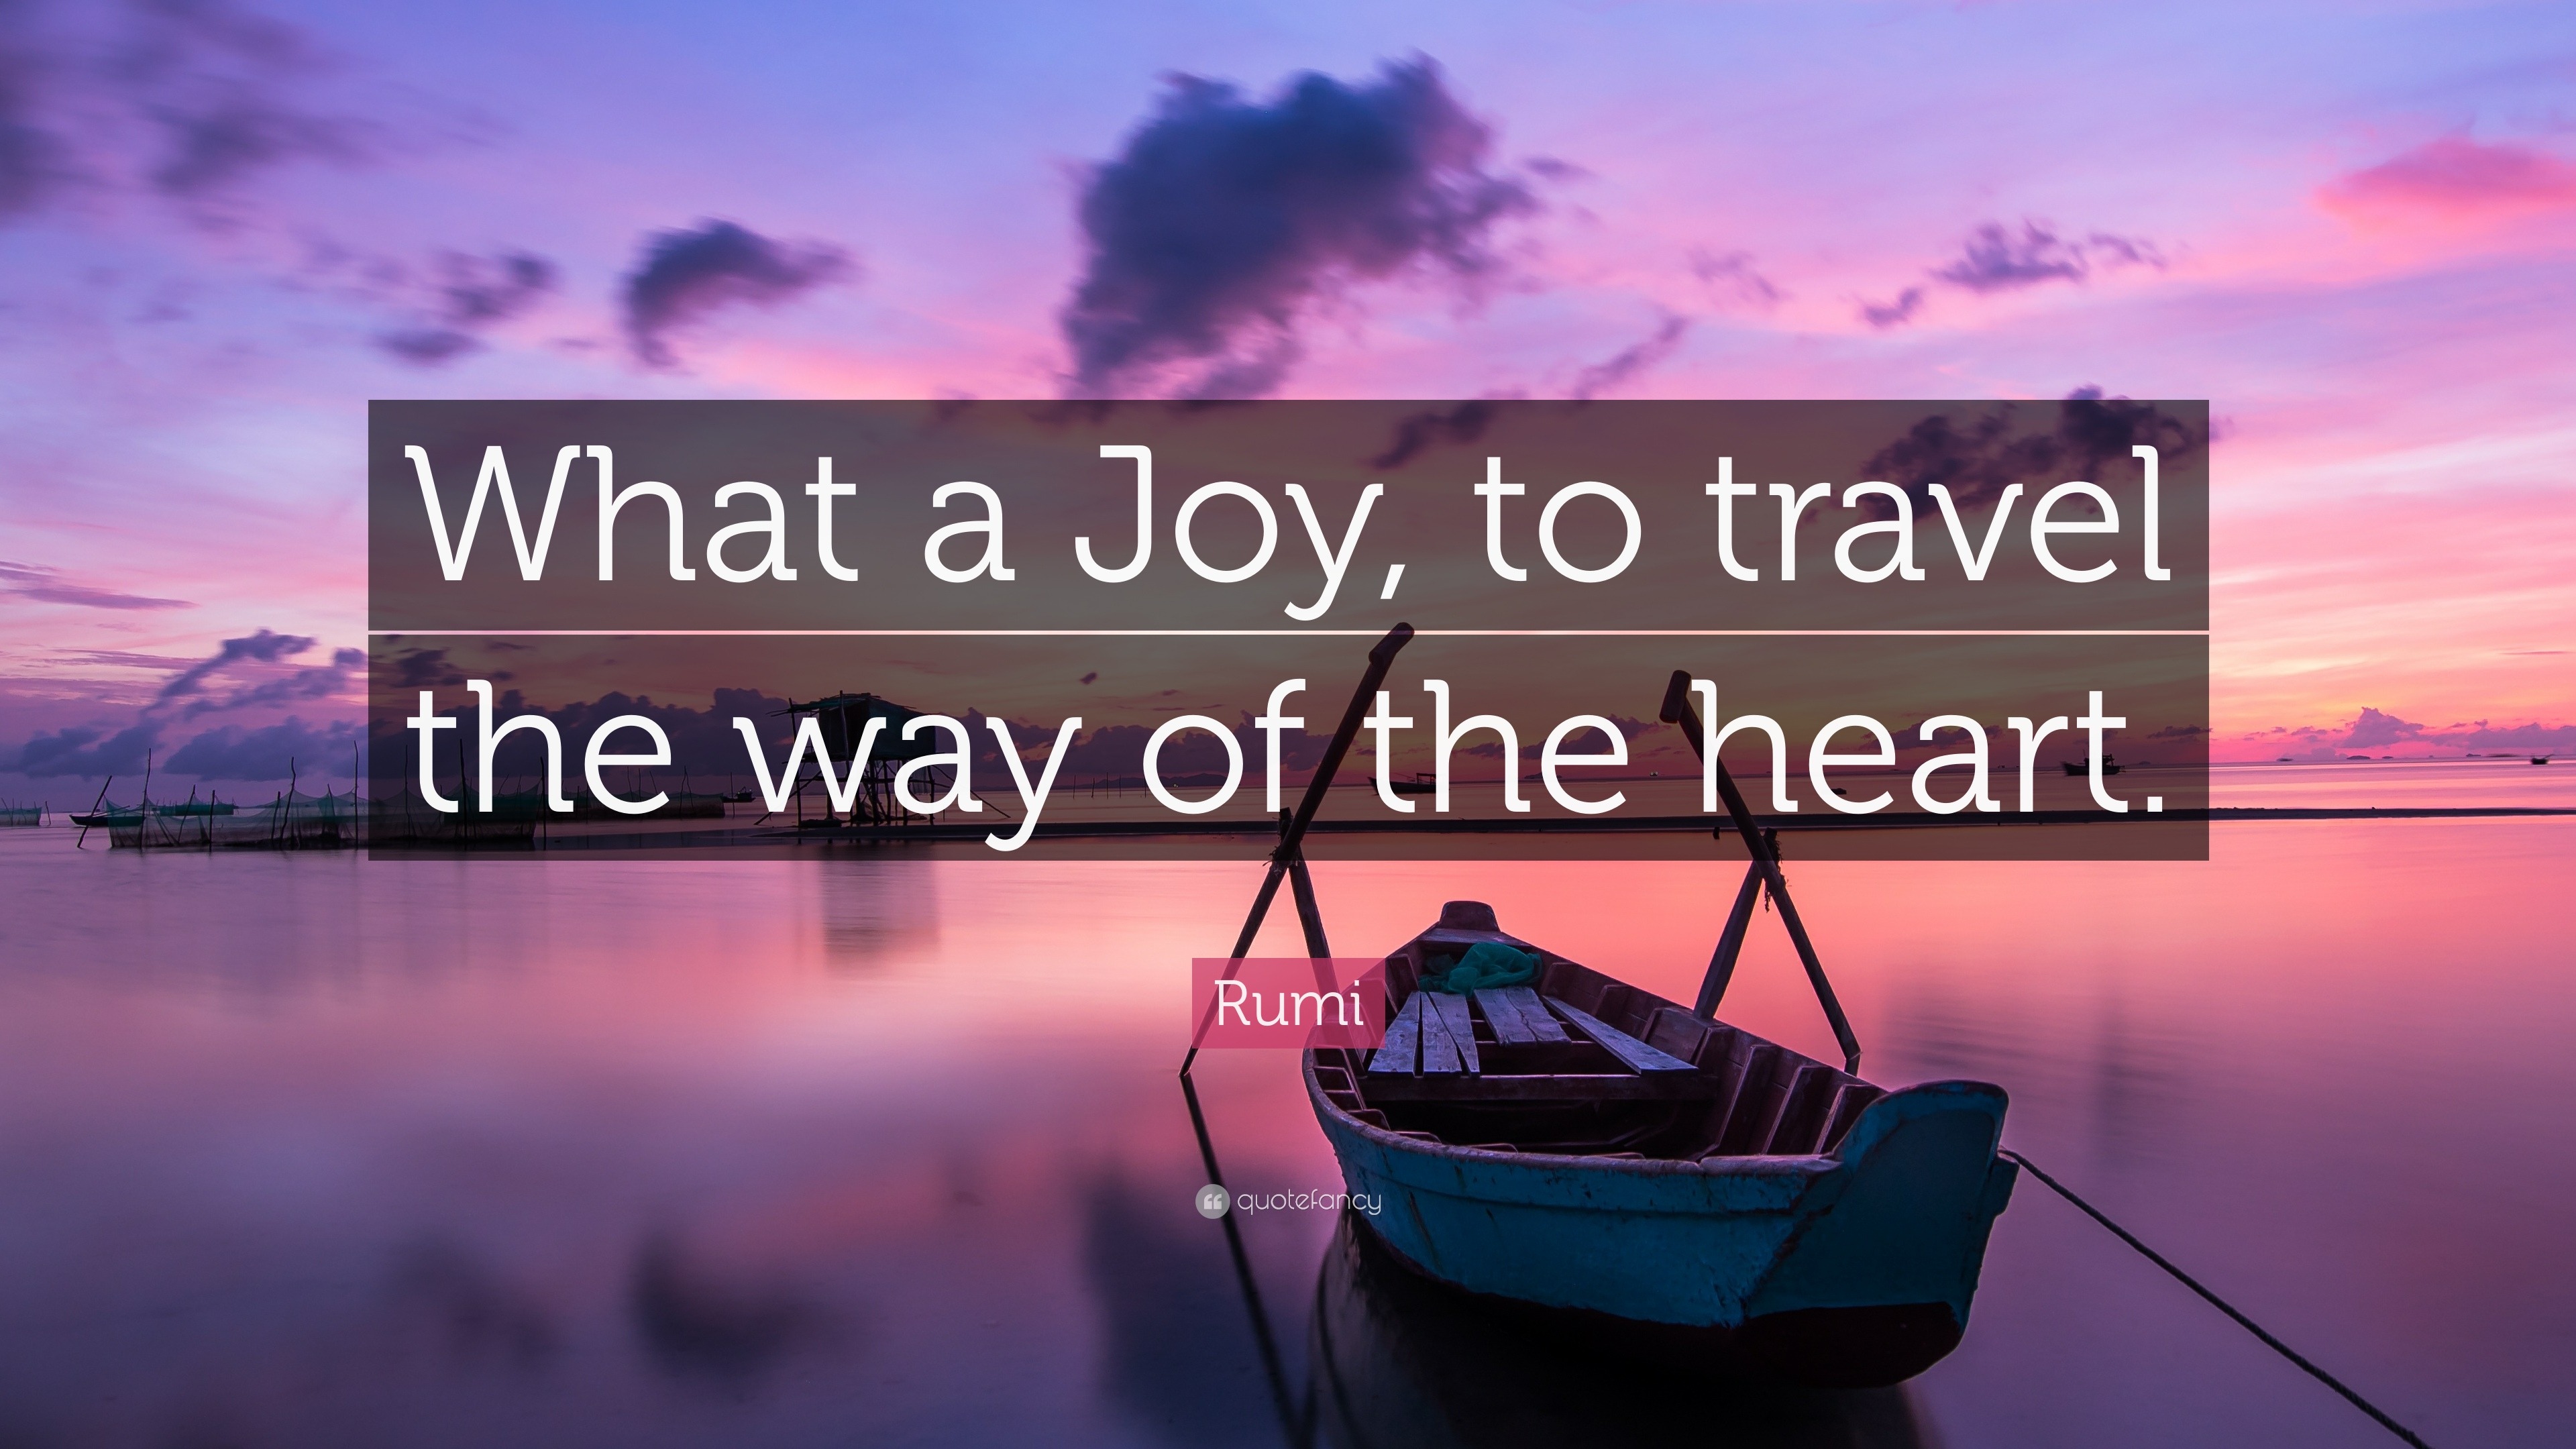 travel with joy